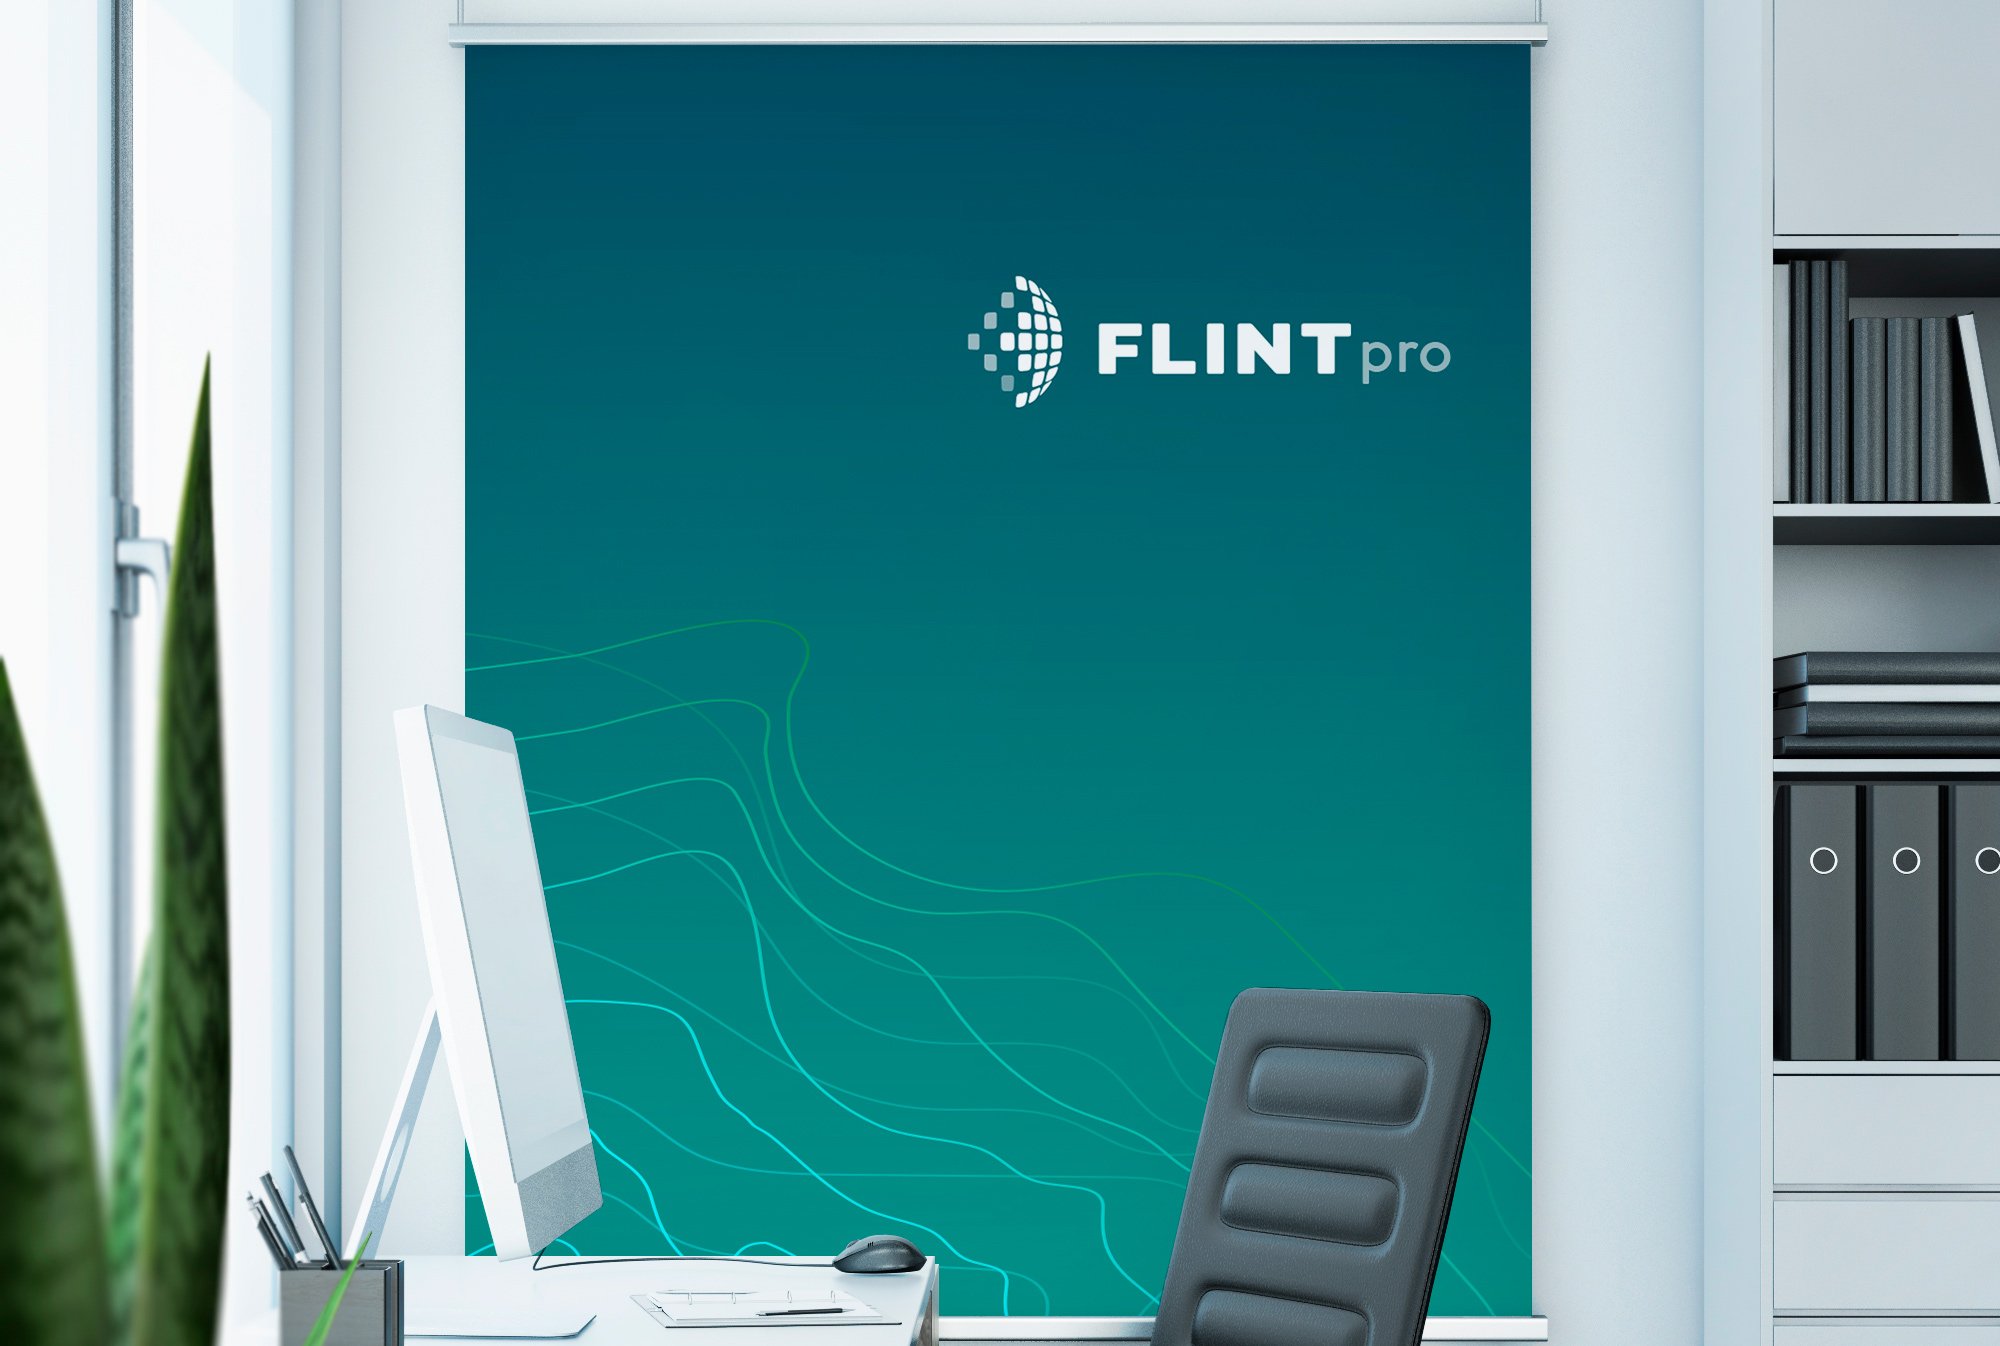 FLINTpro Branding